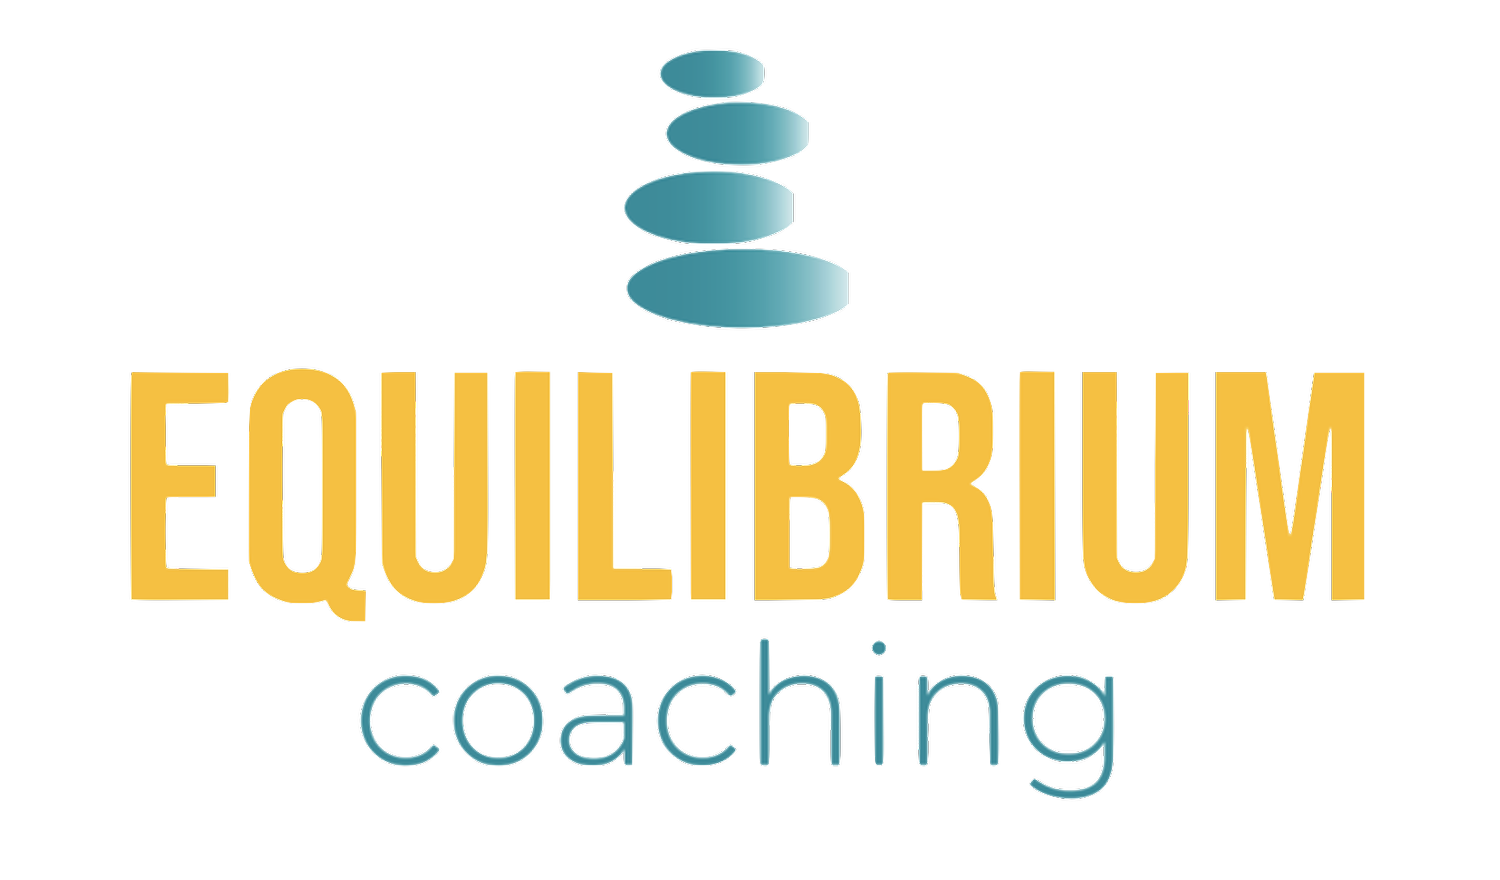 Equilibrium Coaching